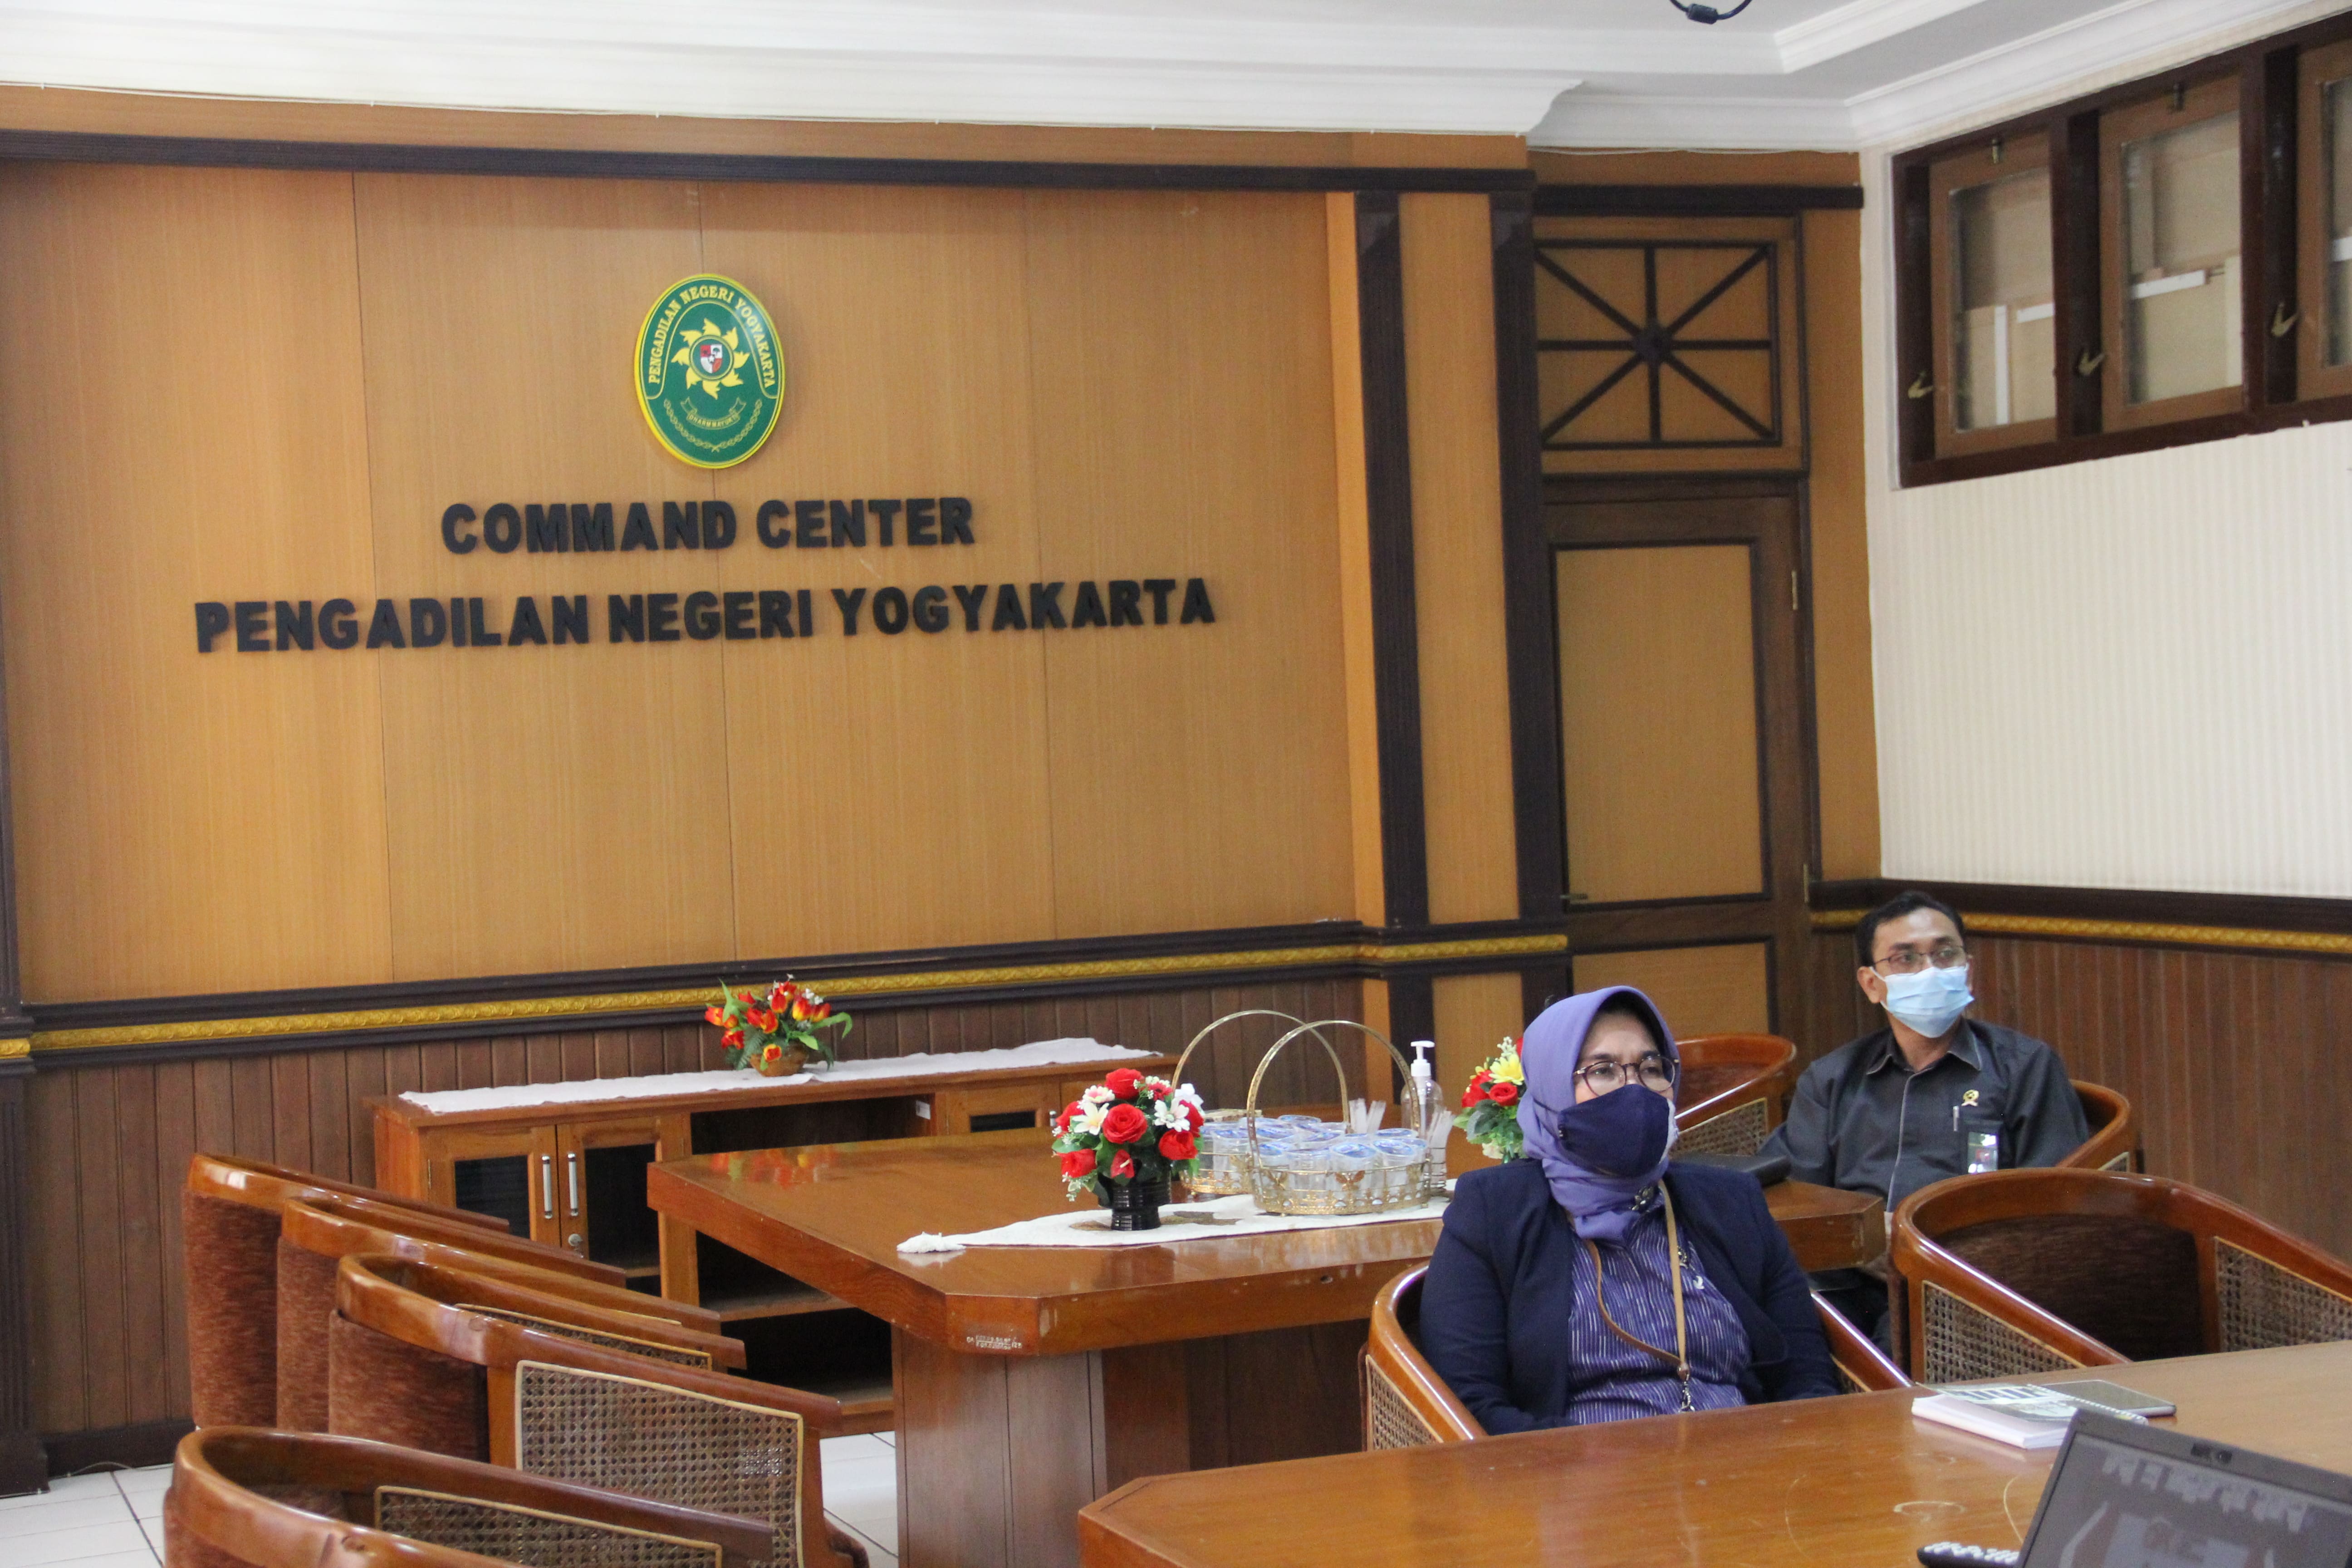 Ketua Pengadilan Negeri Yogyakarta Mengikuti Sosialisasi Perlindungan Konsumen serta Peran dan Manfaat LAPS SJK dan Mekanisme Penyelesaian Sengketa Melalui LAPS SJK